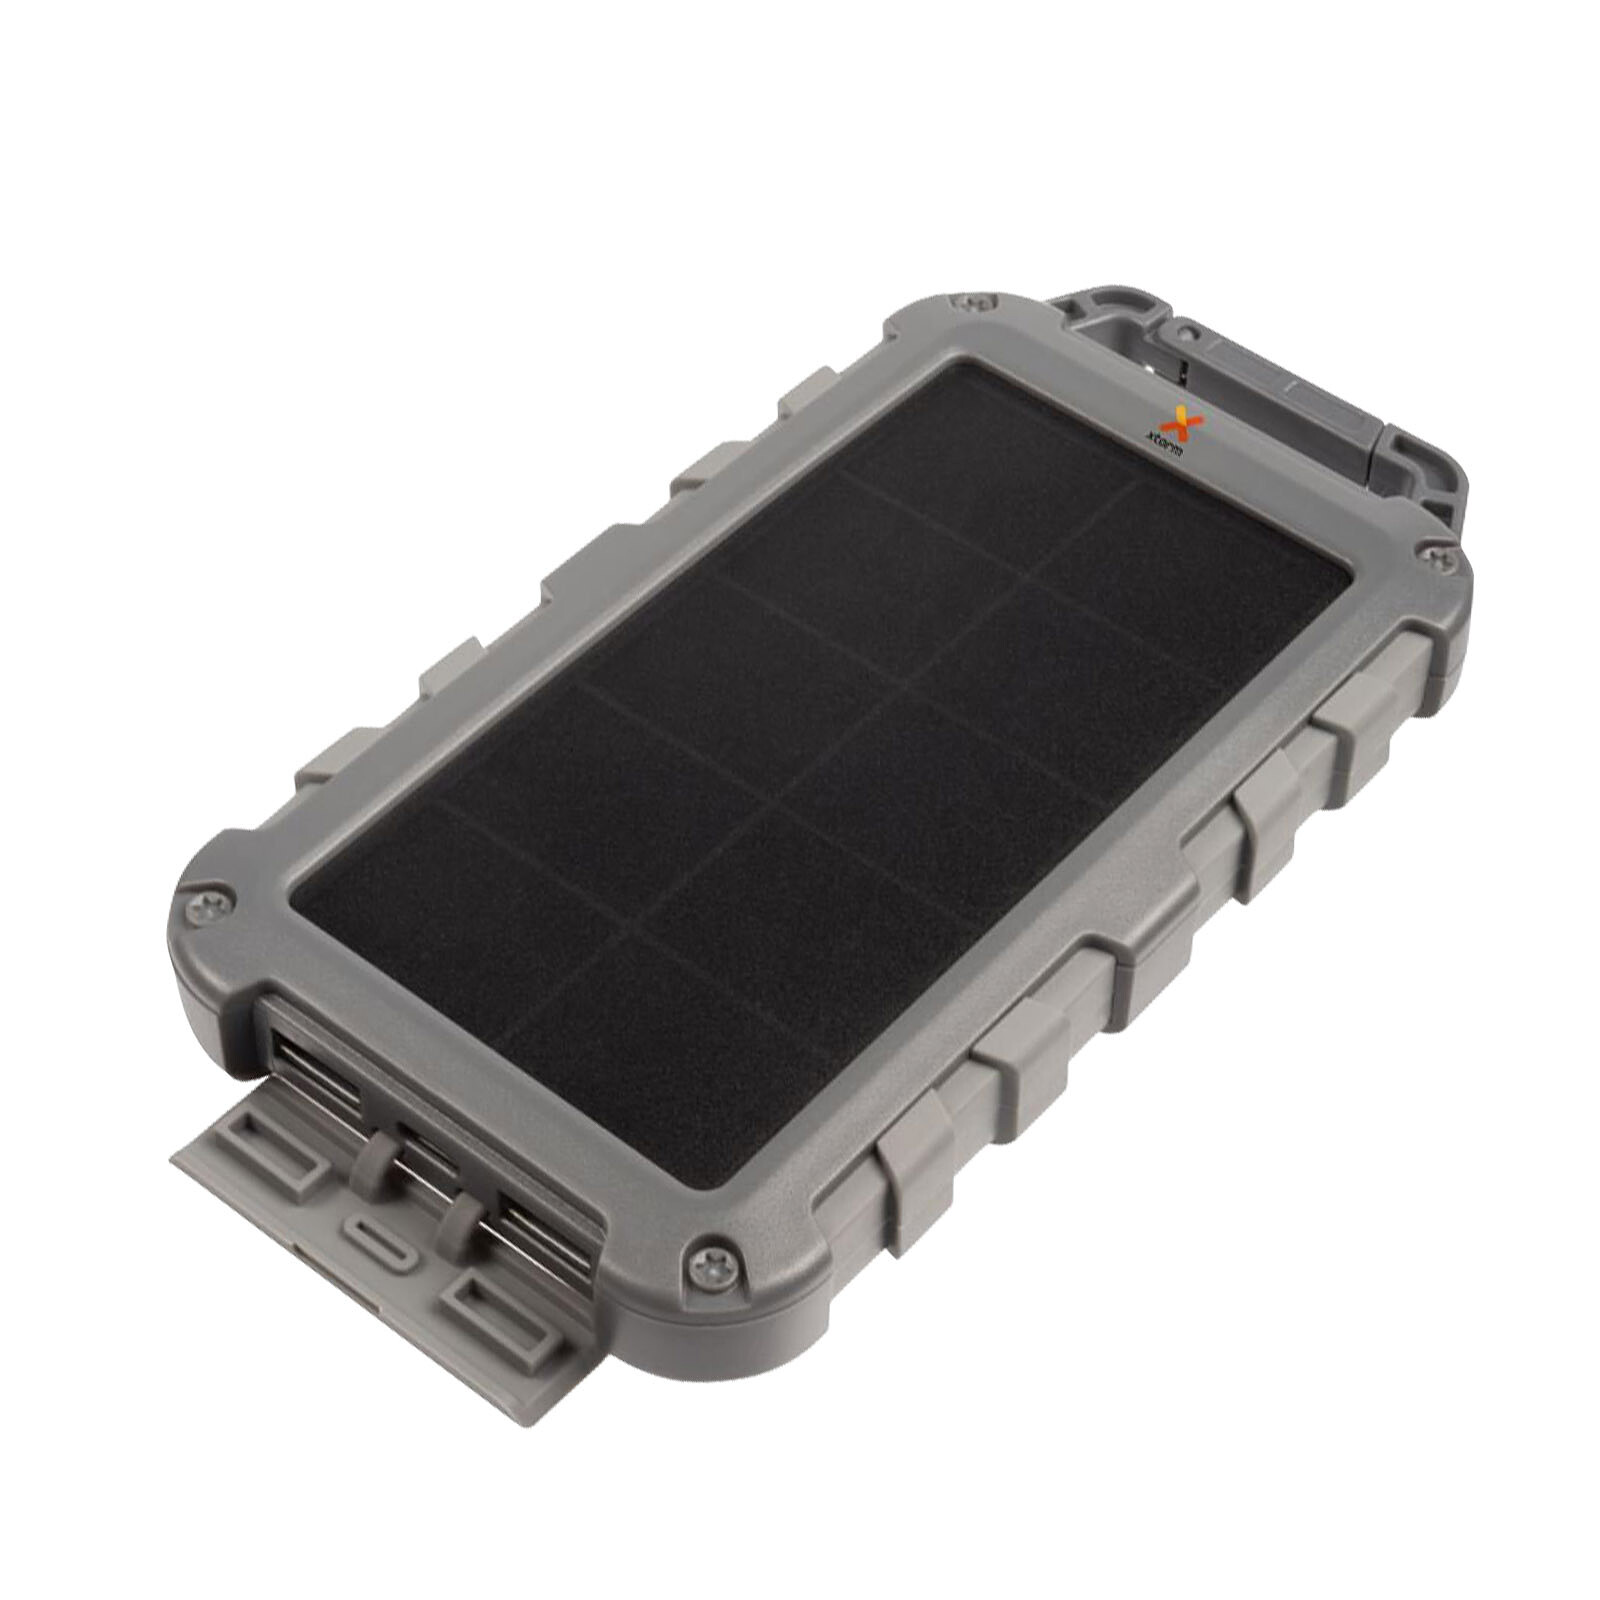 Xtorm Powerbank Solaire 10000mAh 20W 2x USB + USB-C Lampe LED Fuel Series  Gris - Batterie externe - LDLC